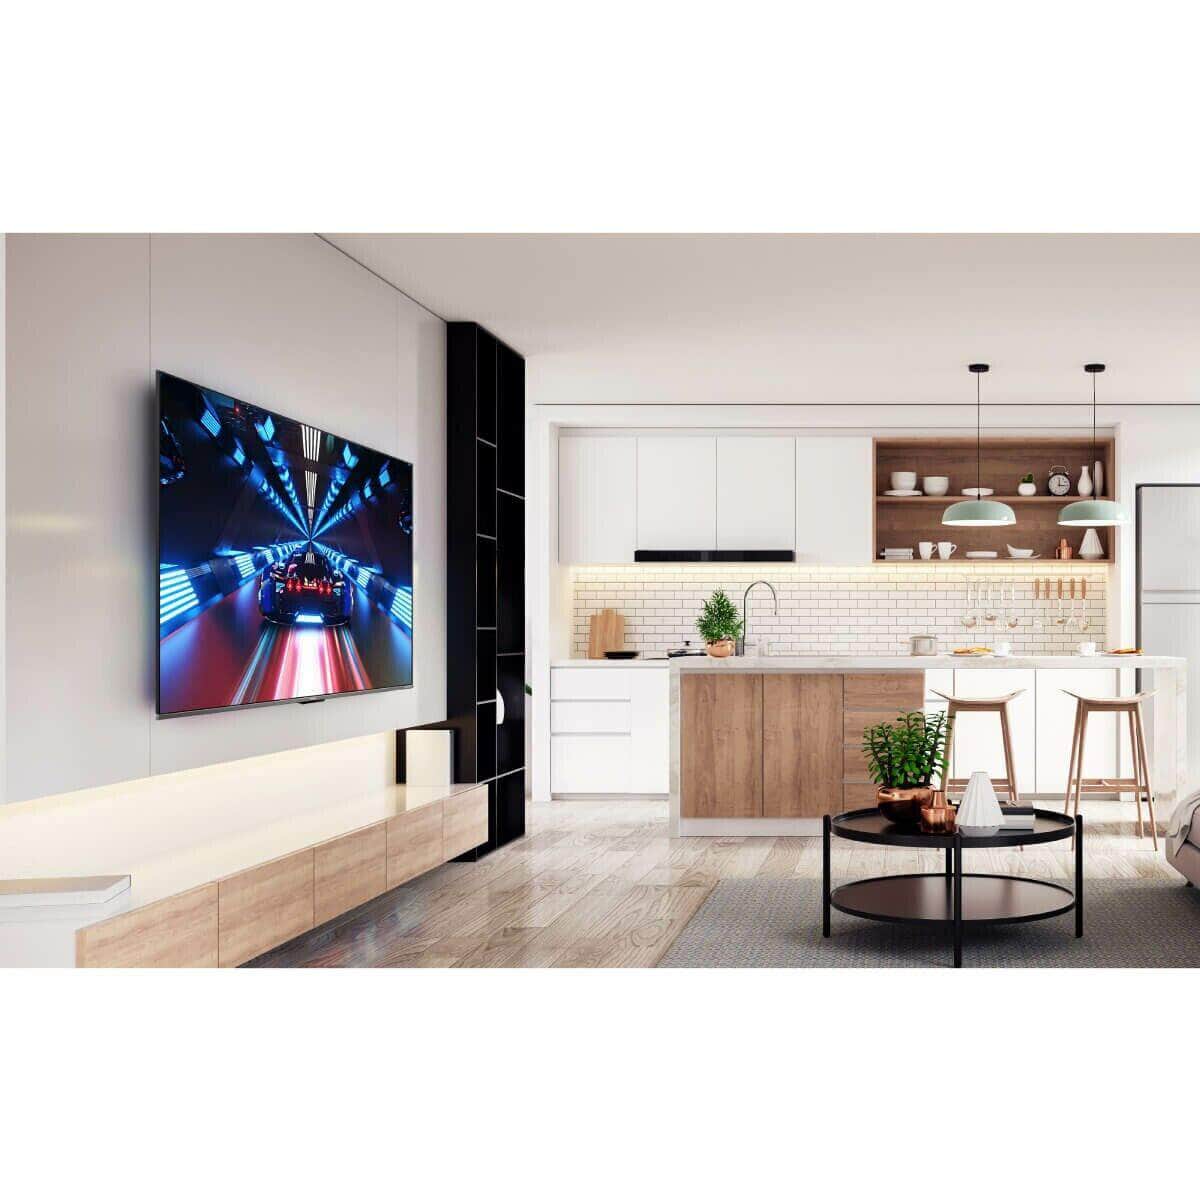 TCL 55" Smart TV QLED HDR 10+ 4K Dolby Vision